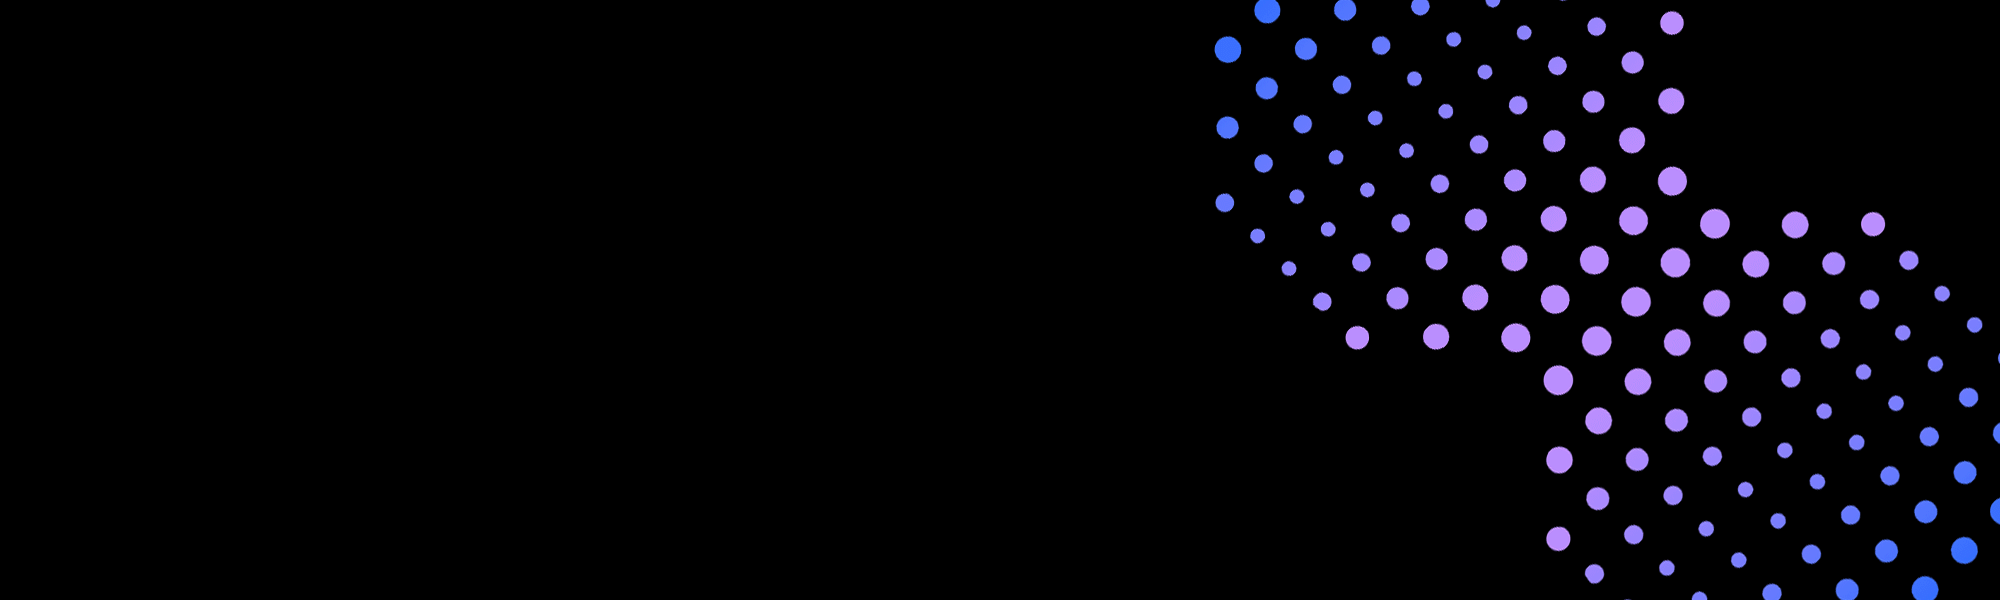 Fondo negro con círculos azules y morados 